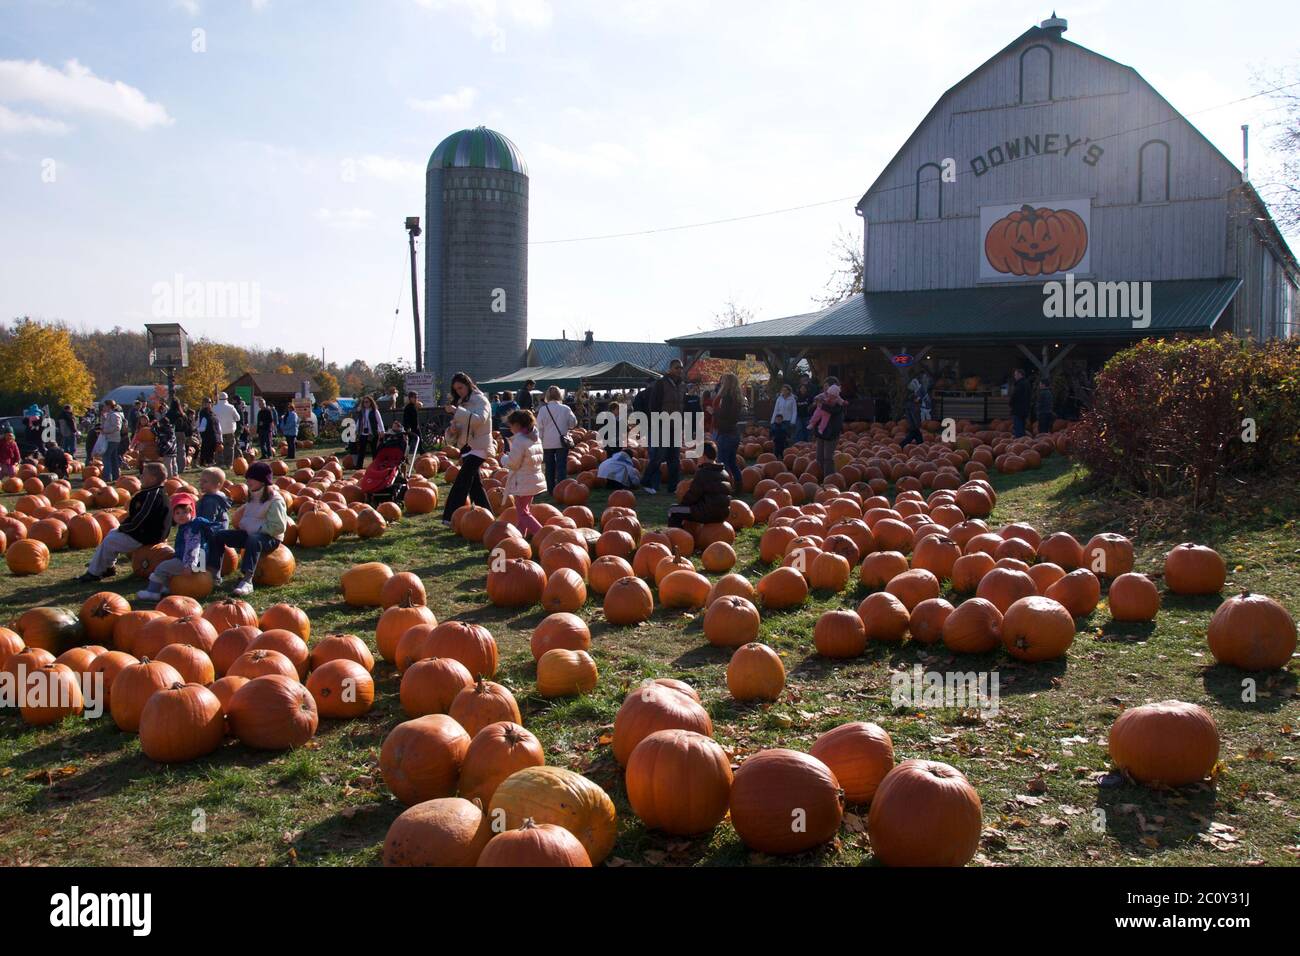 Orangeville, Ontario / Canada - 10/25/2009: Pumpkins on sale in a farm market, Orangeville, Ontario, Canada. Stock Photo